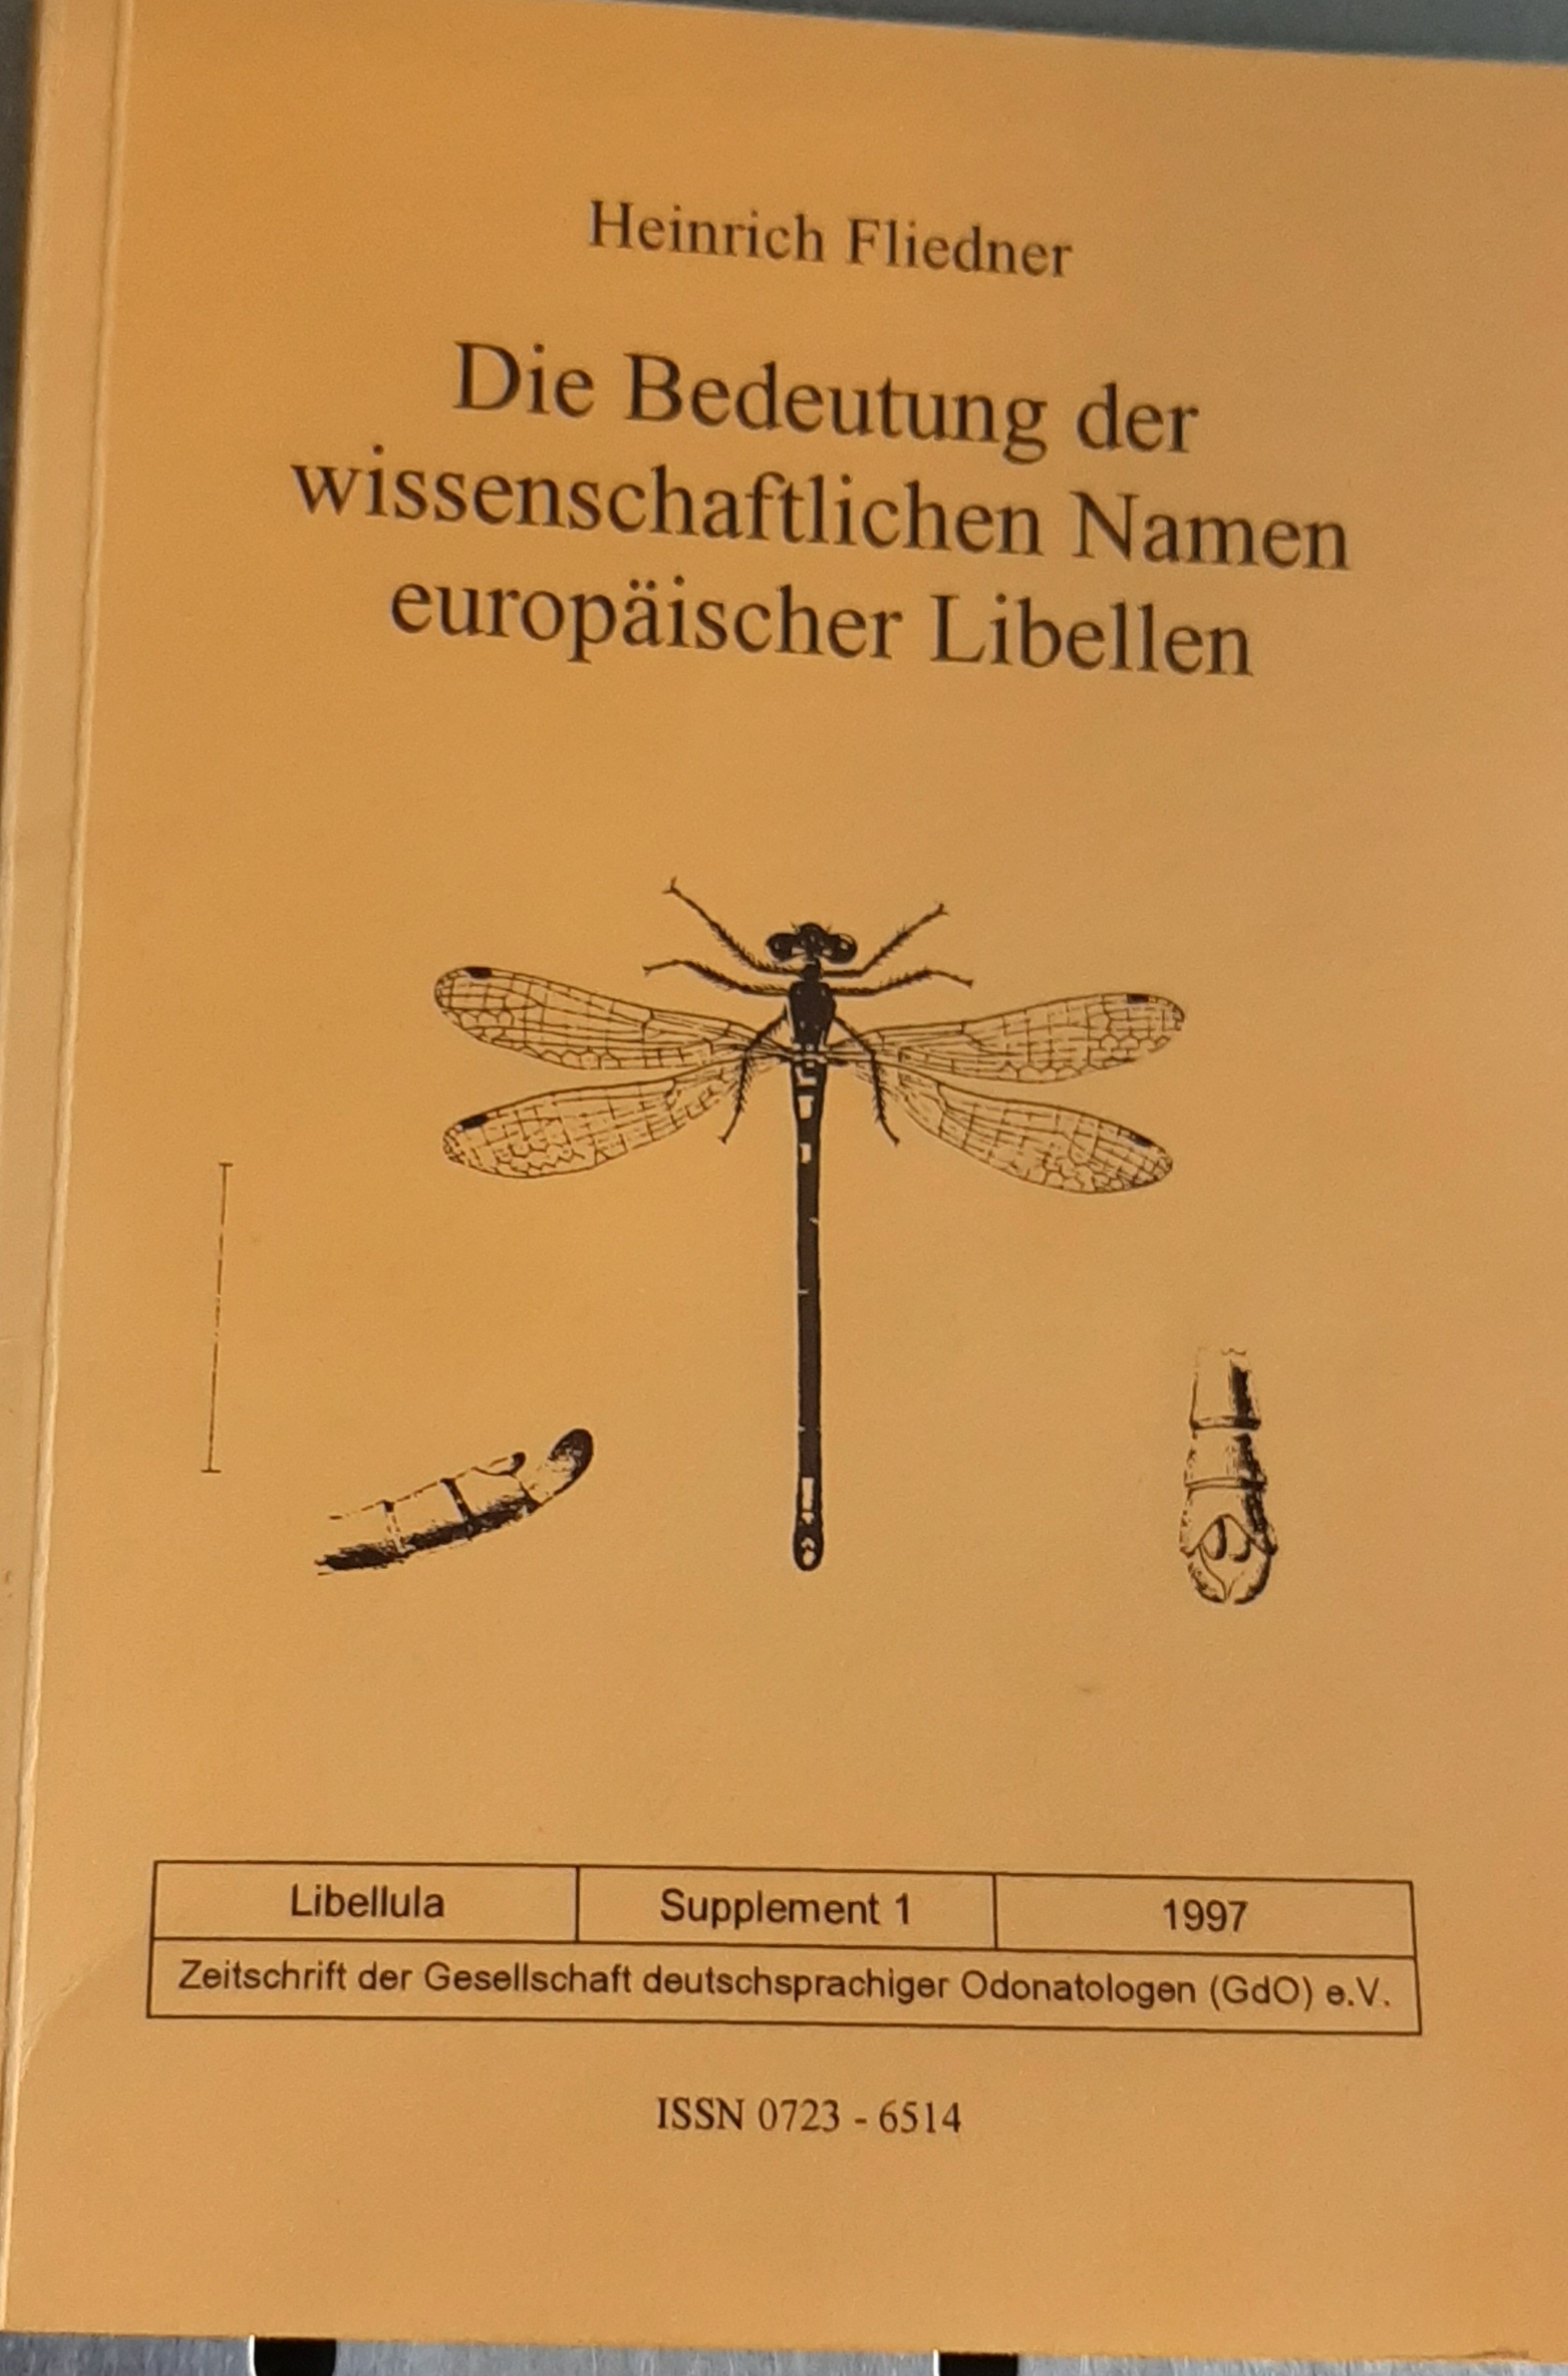 Libellula 1997/Supplement 1: Heinrich Fliedner: Die Bedeutung der wissenschaftlichen Namen europäischer Libellen (Rippl-Rónai Múzeum RR-F)